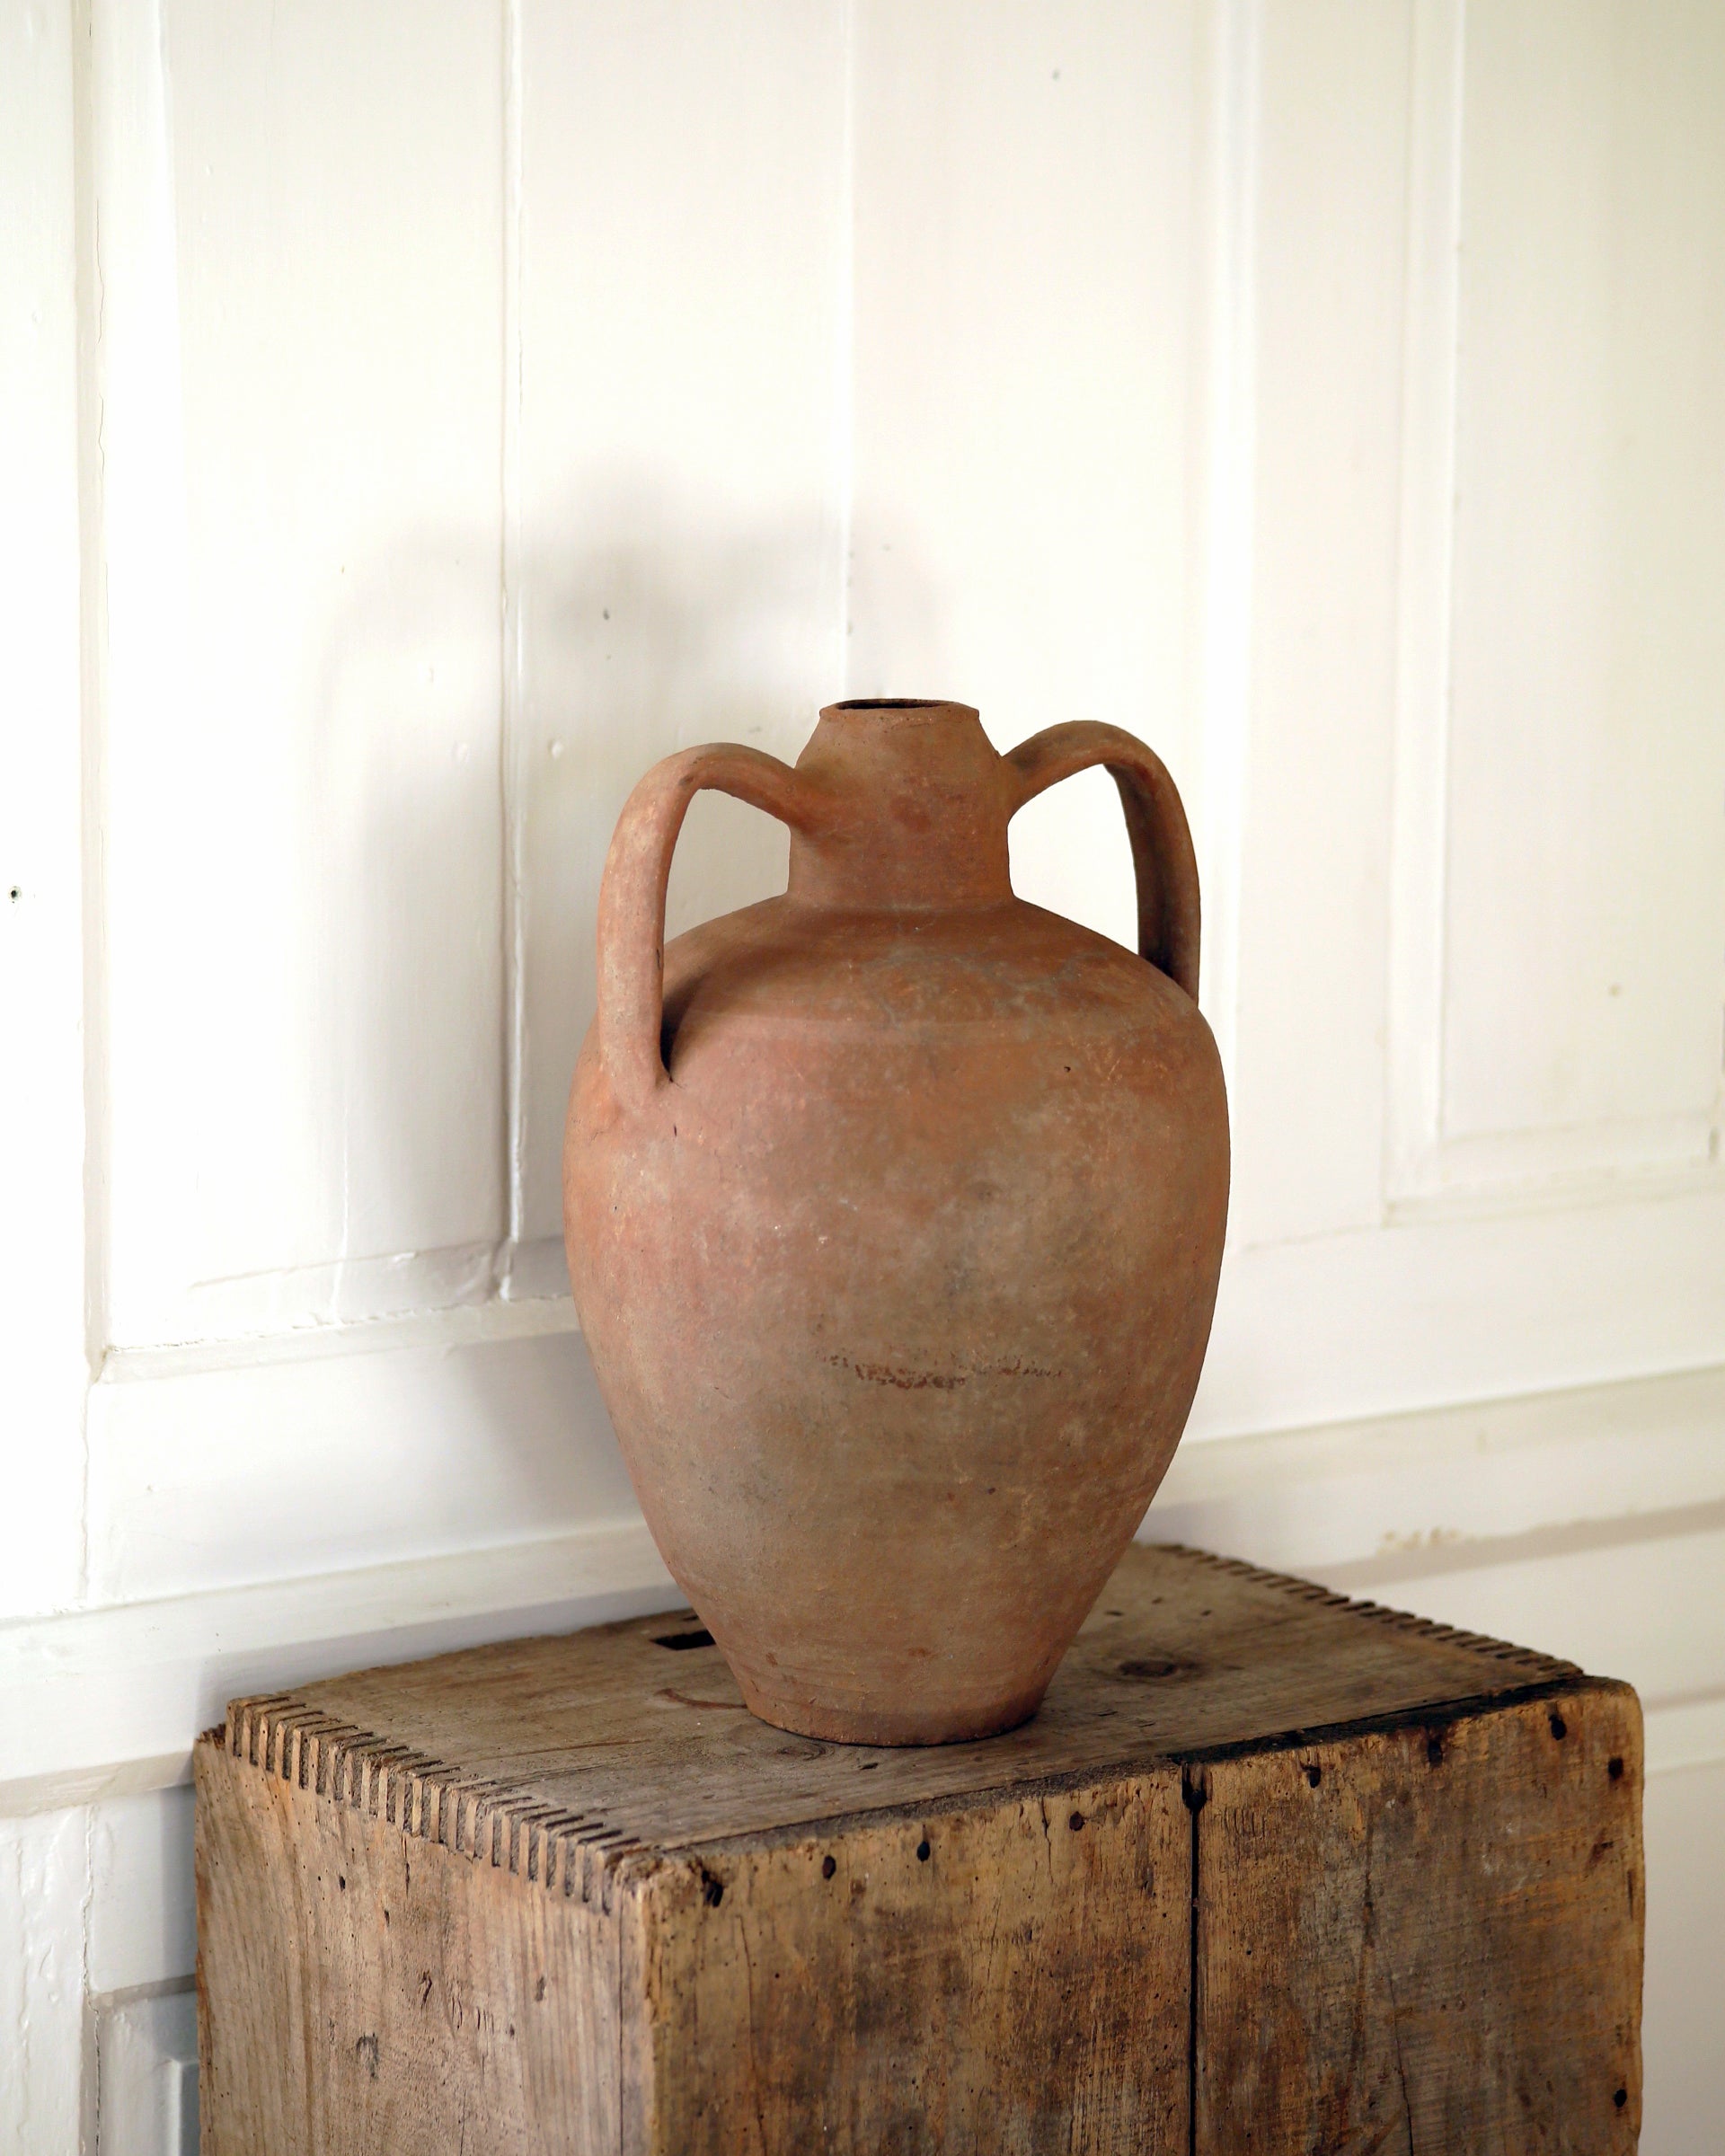 Statement antique urn on wooden plinth